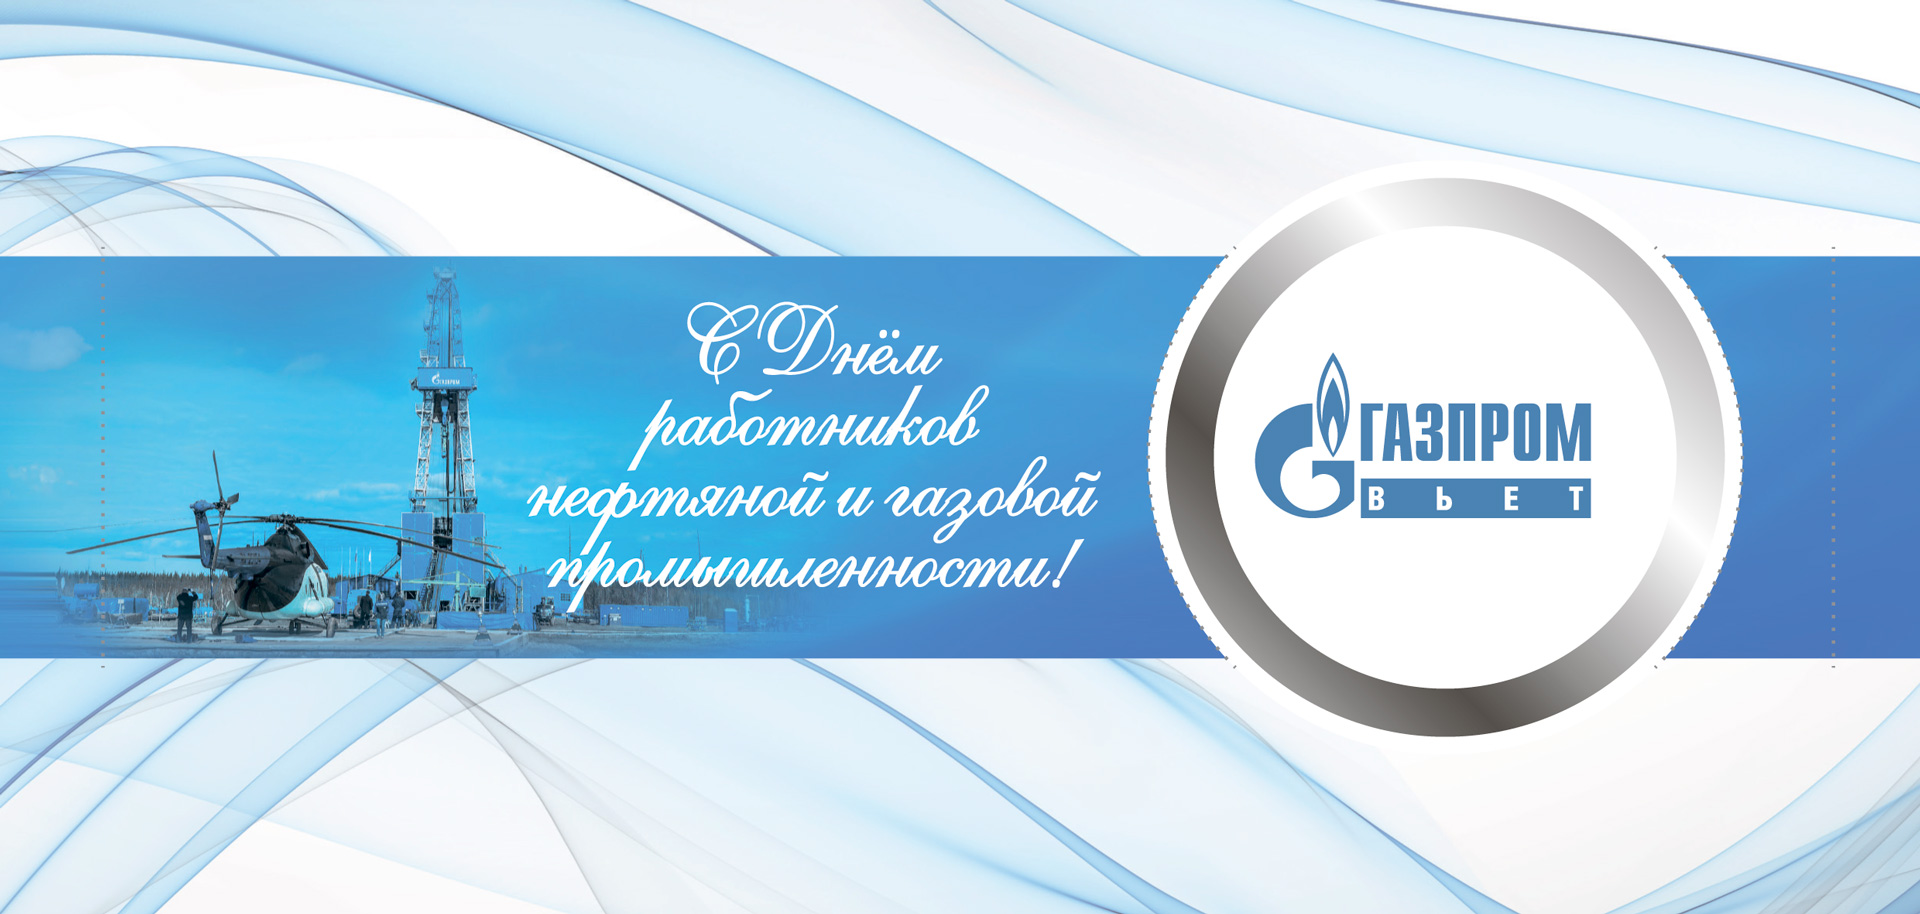 9 may Gazprom 4